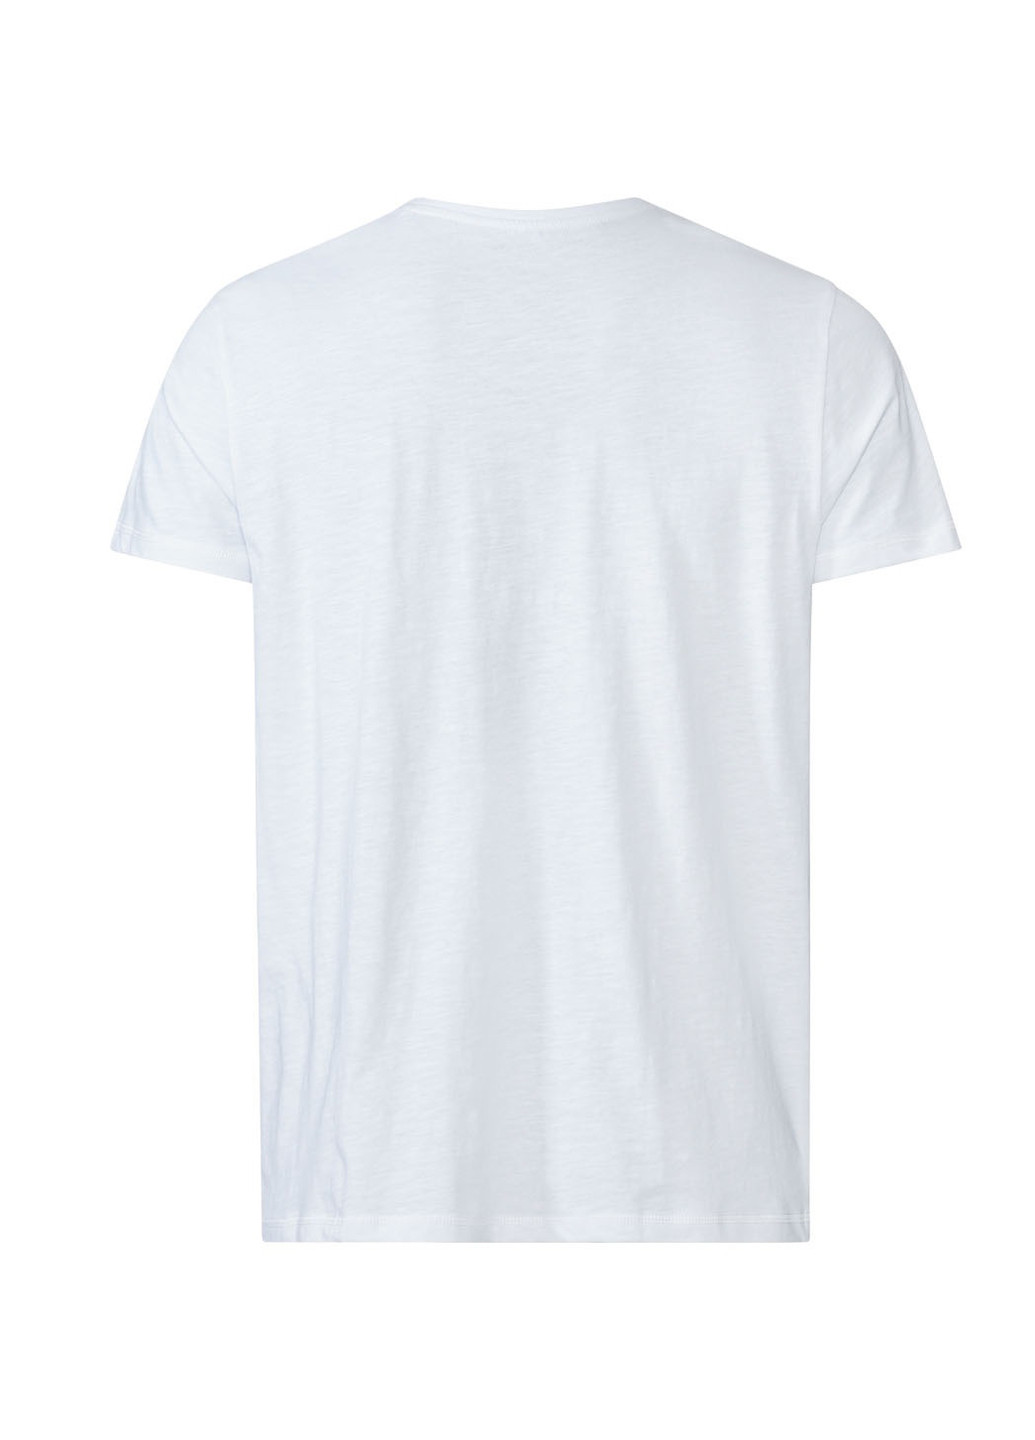 Біла футболка Livergy